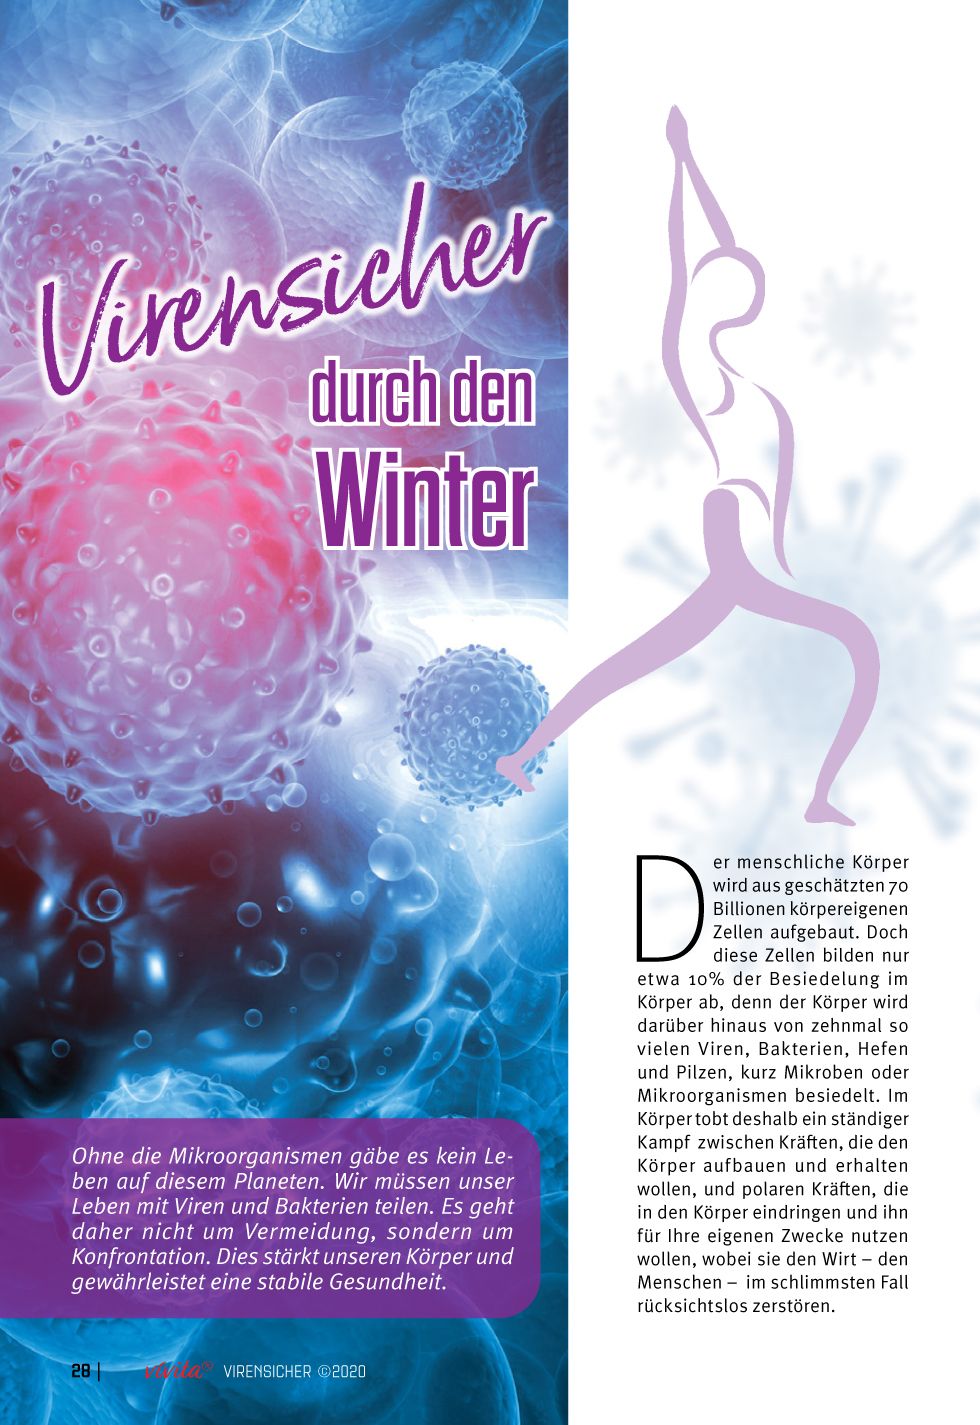 Natürlicher Virenschutz: Virensicher durch Herbst und Winter